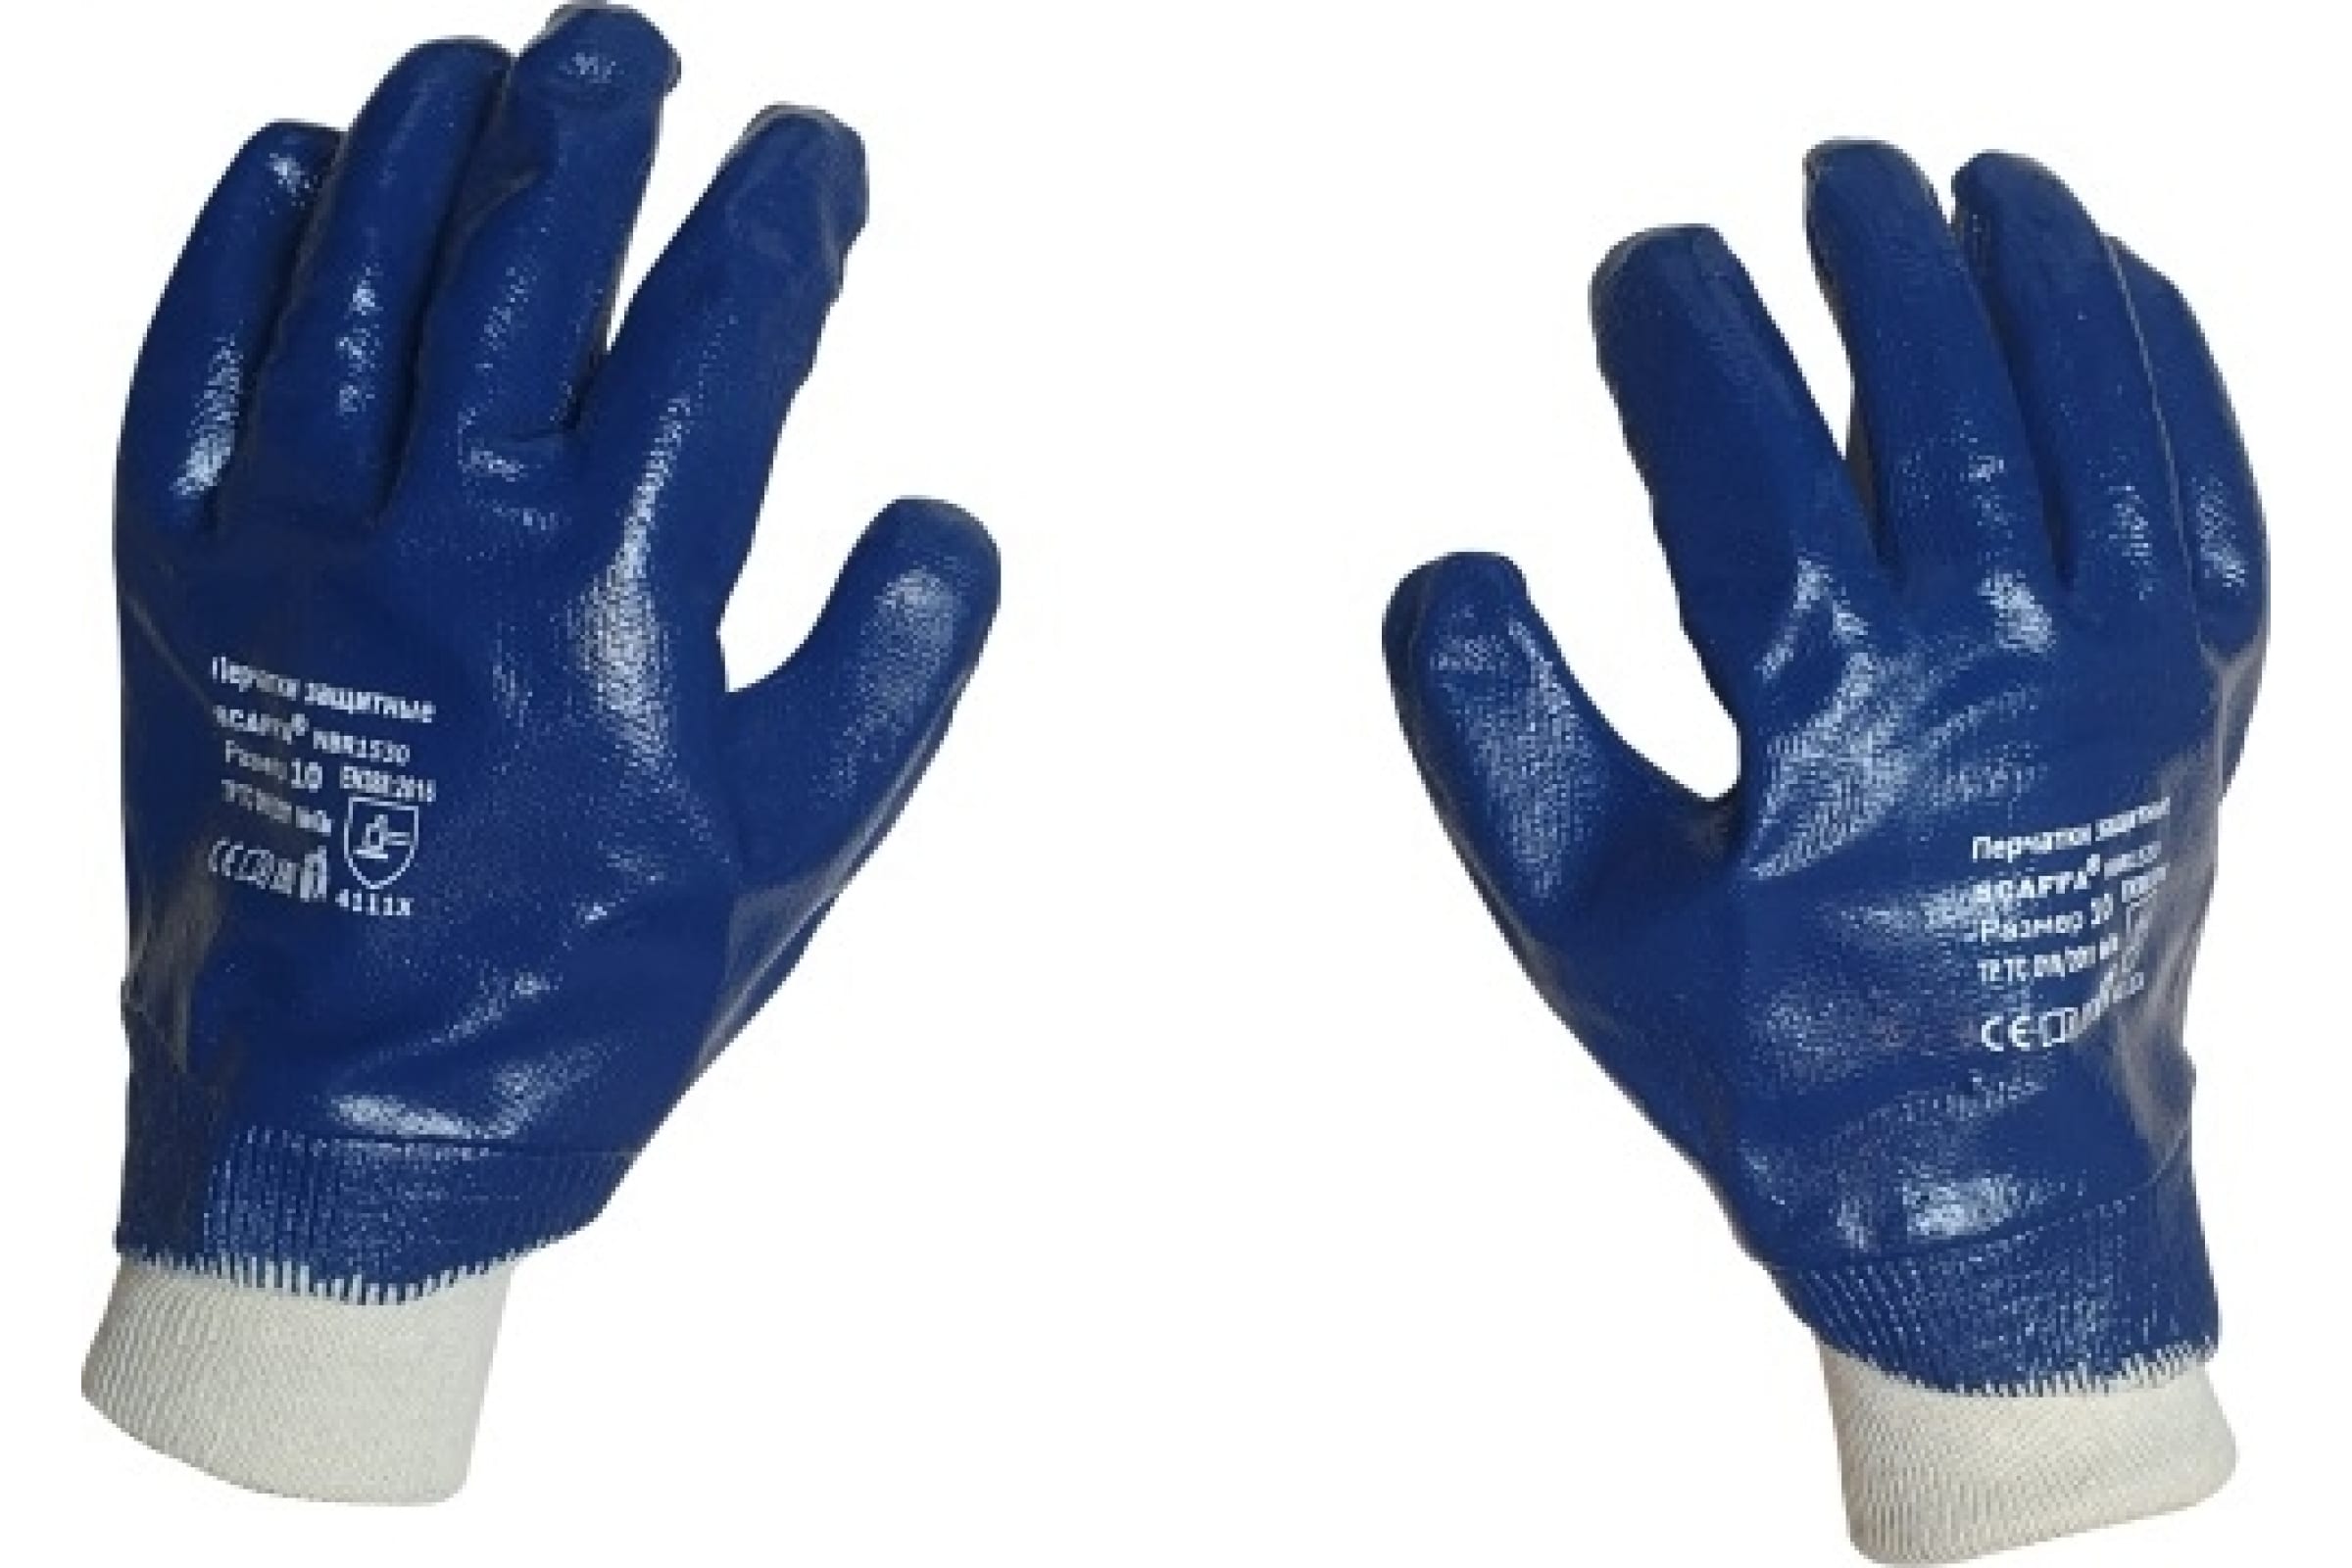 Scaffa перчатки с полным нитриловым обливом NBR1530 размер 10 00-00012457 перчатки с полным нитриловым обливом scaffa nbr1515 10